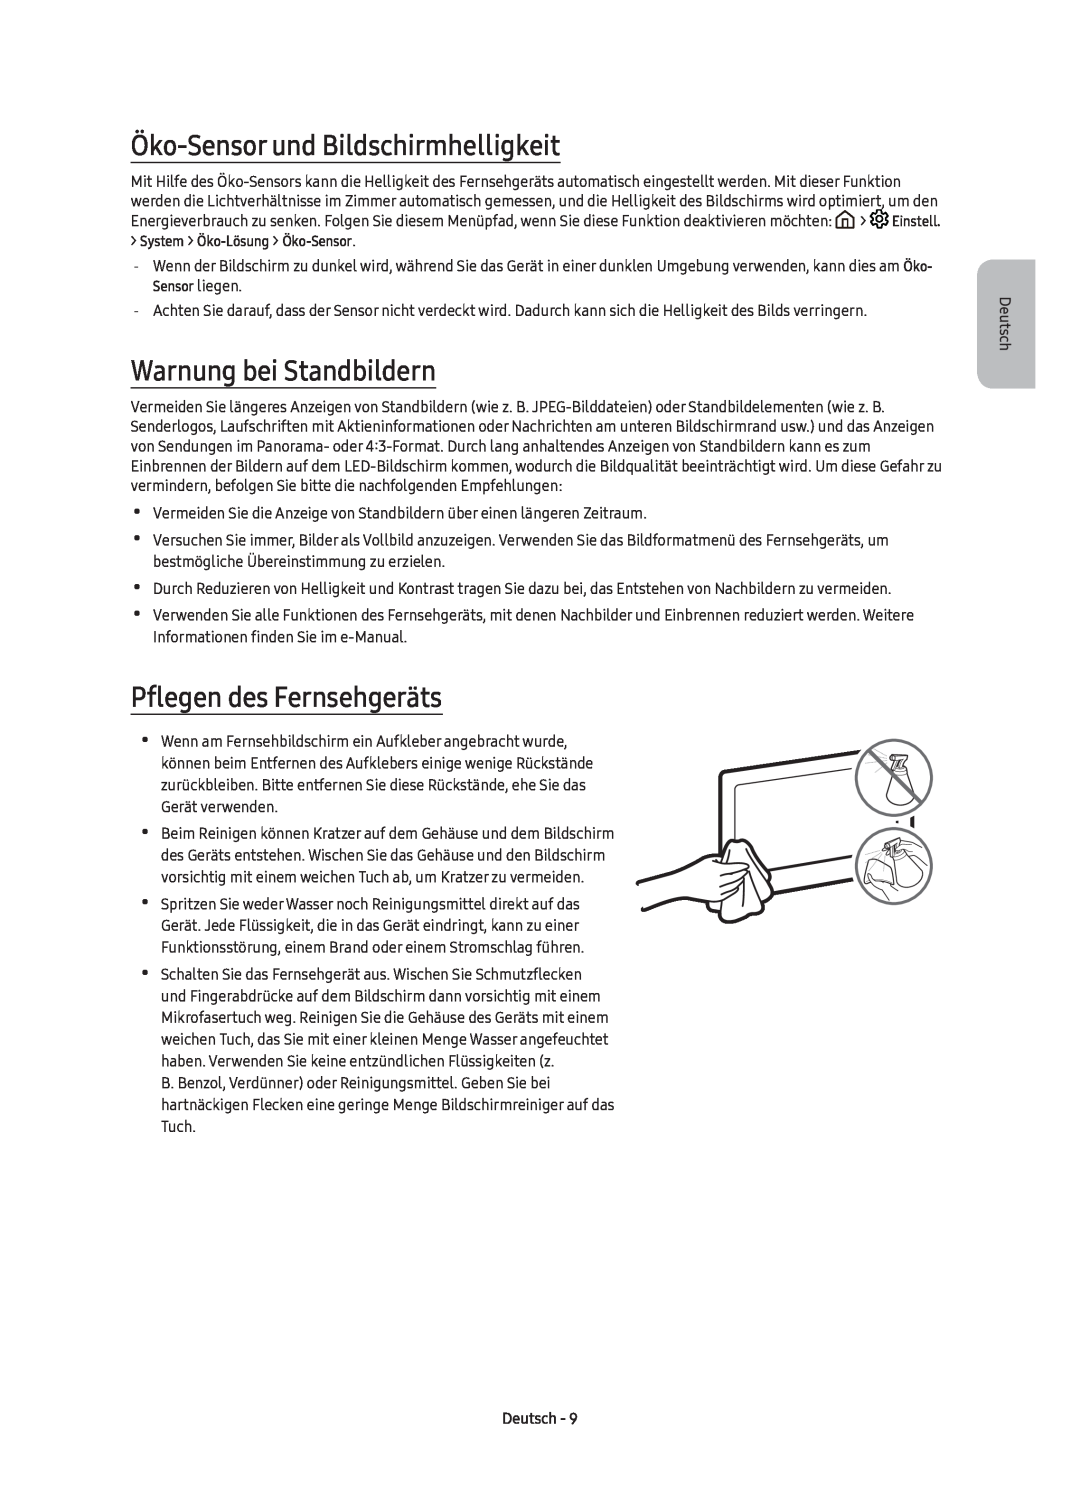 Samsung UE40K6370SUXZG Öko-Sensor und Bildschirmhelligkeit, Warnung bei Standbildern, Pflegen des Fernsehgeräts, Deutsch 